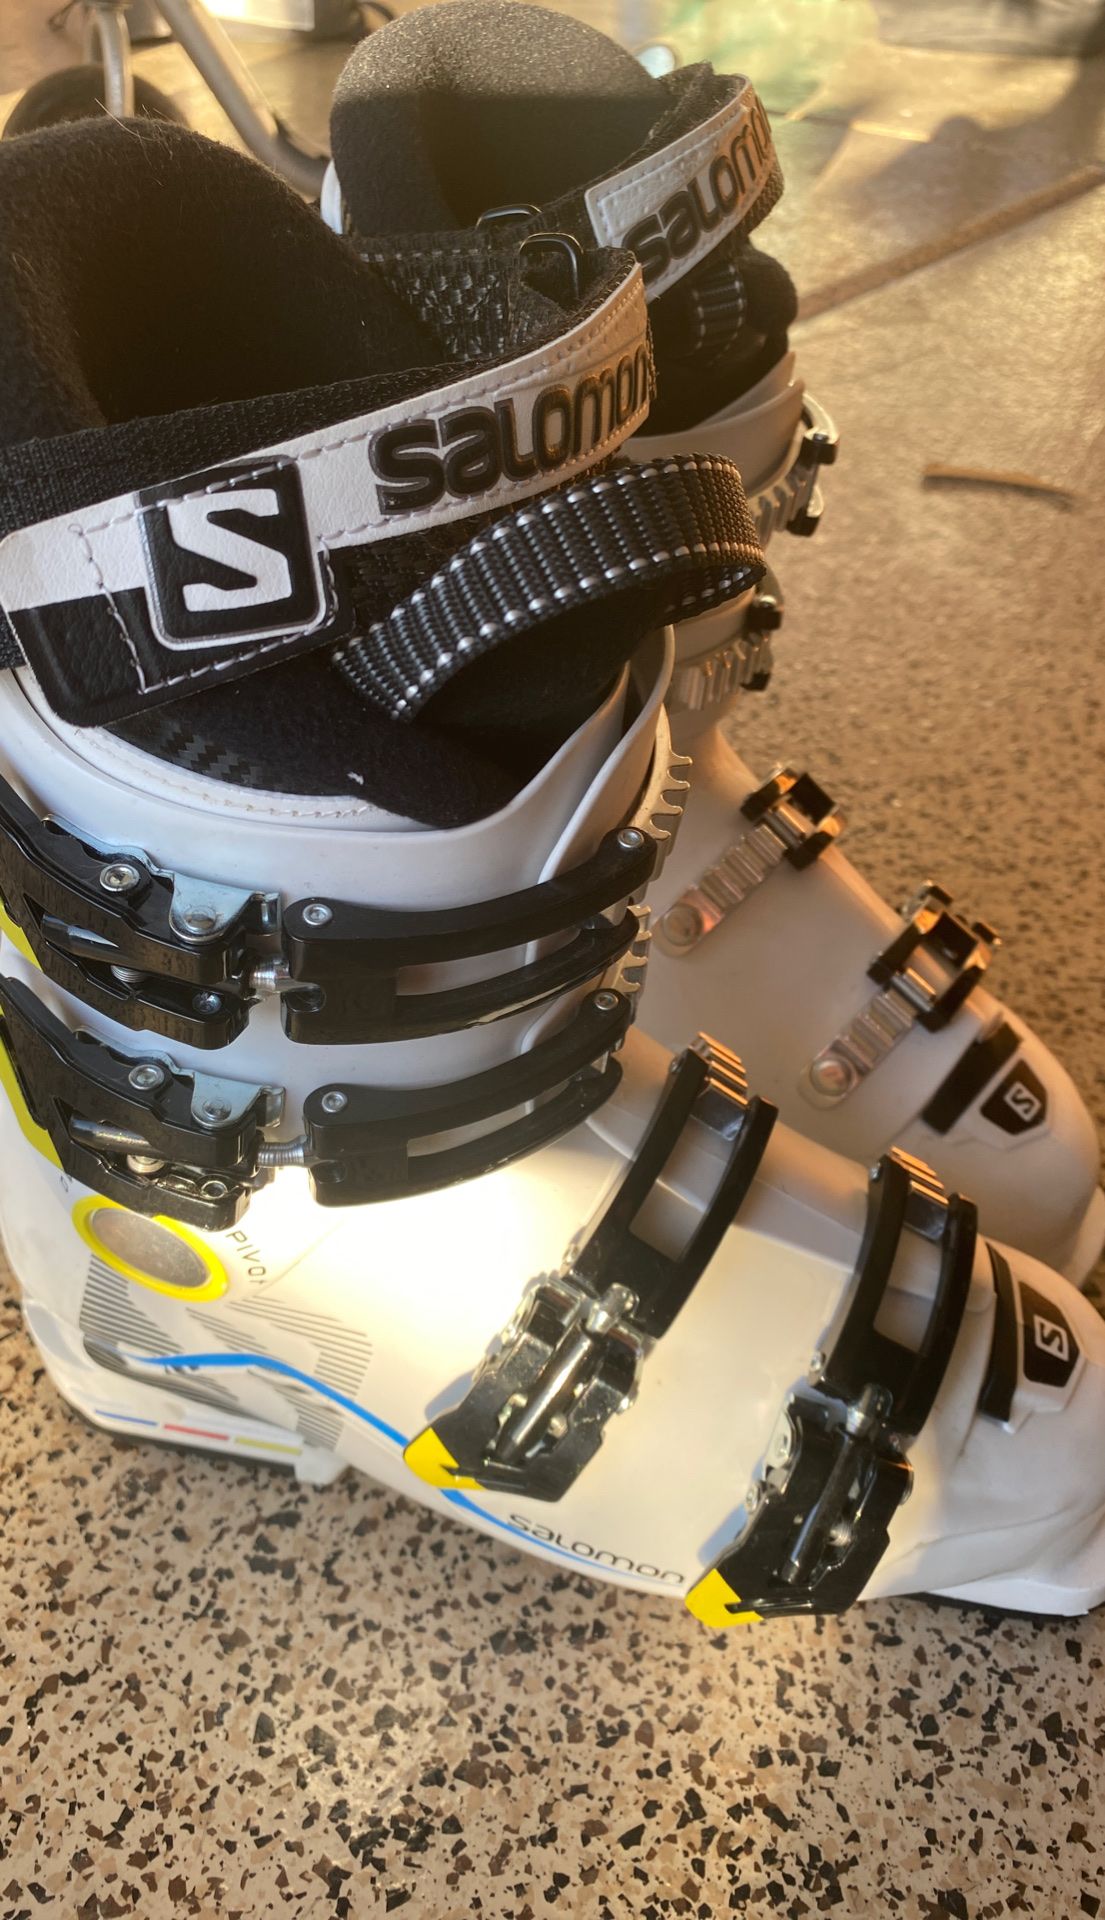 Salomon ski boots